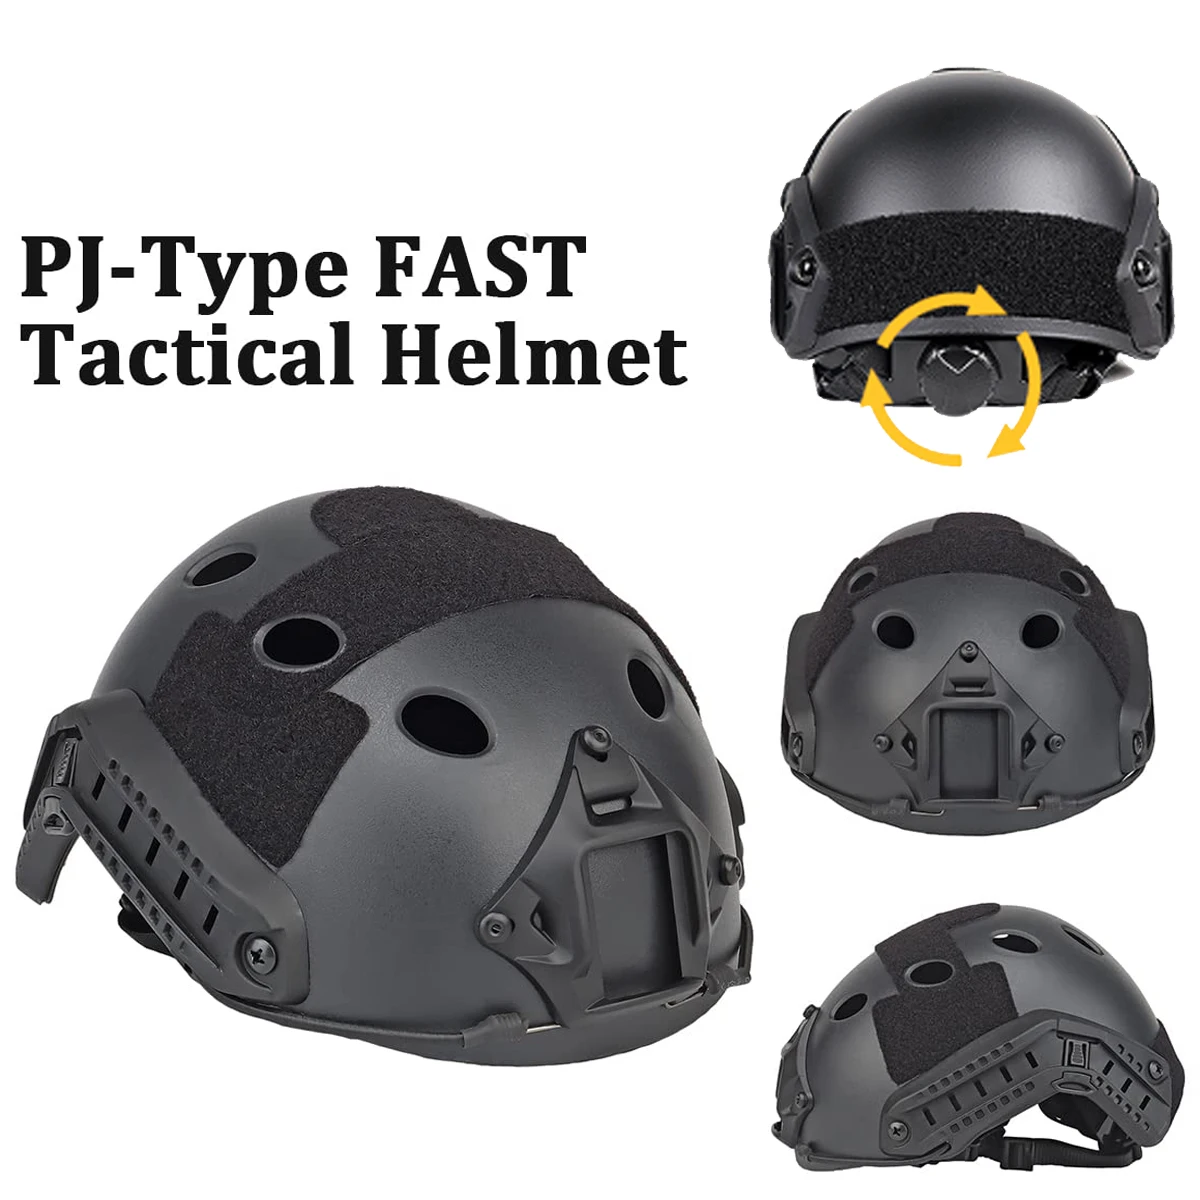 Тактический быстрый шлем AQzxdc с тактической маской и козырьком для игр в страйкбол, пейнтбол, CS, спорт на открытом воздухе